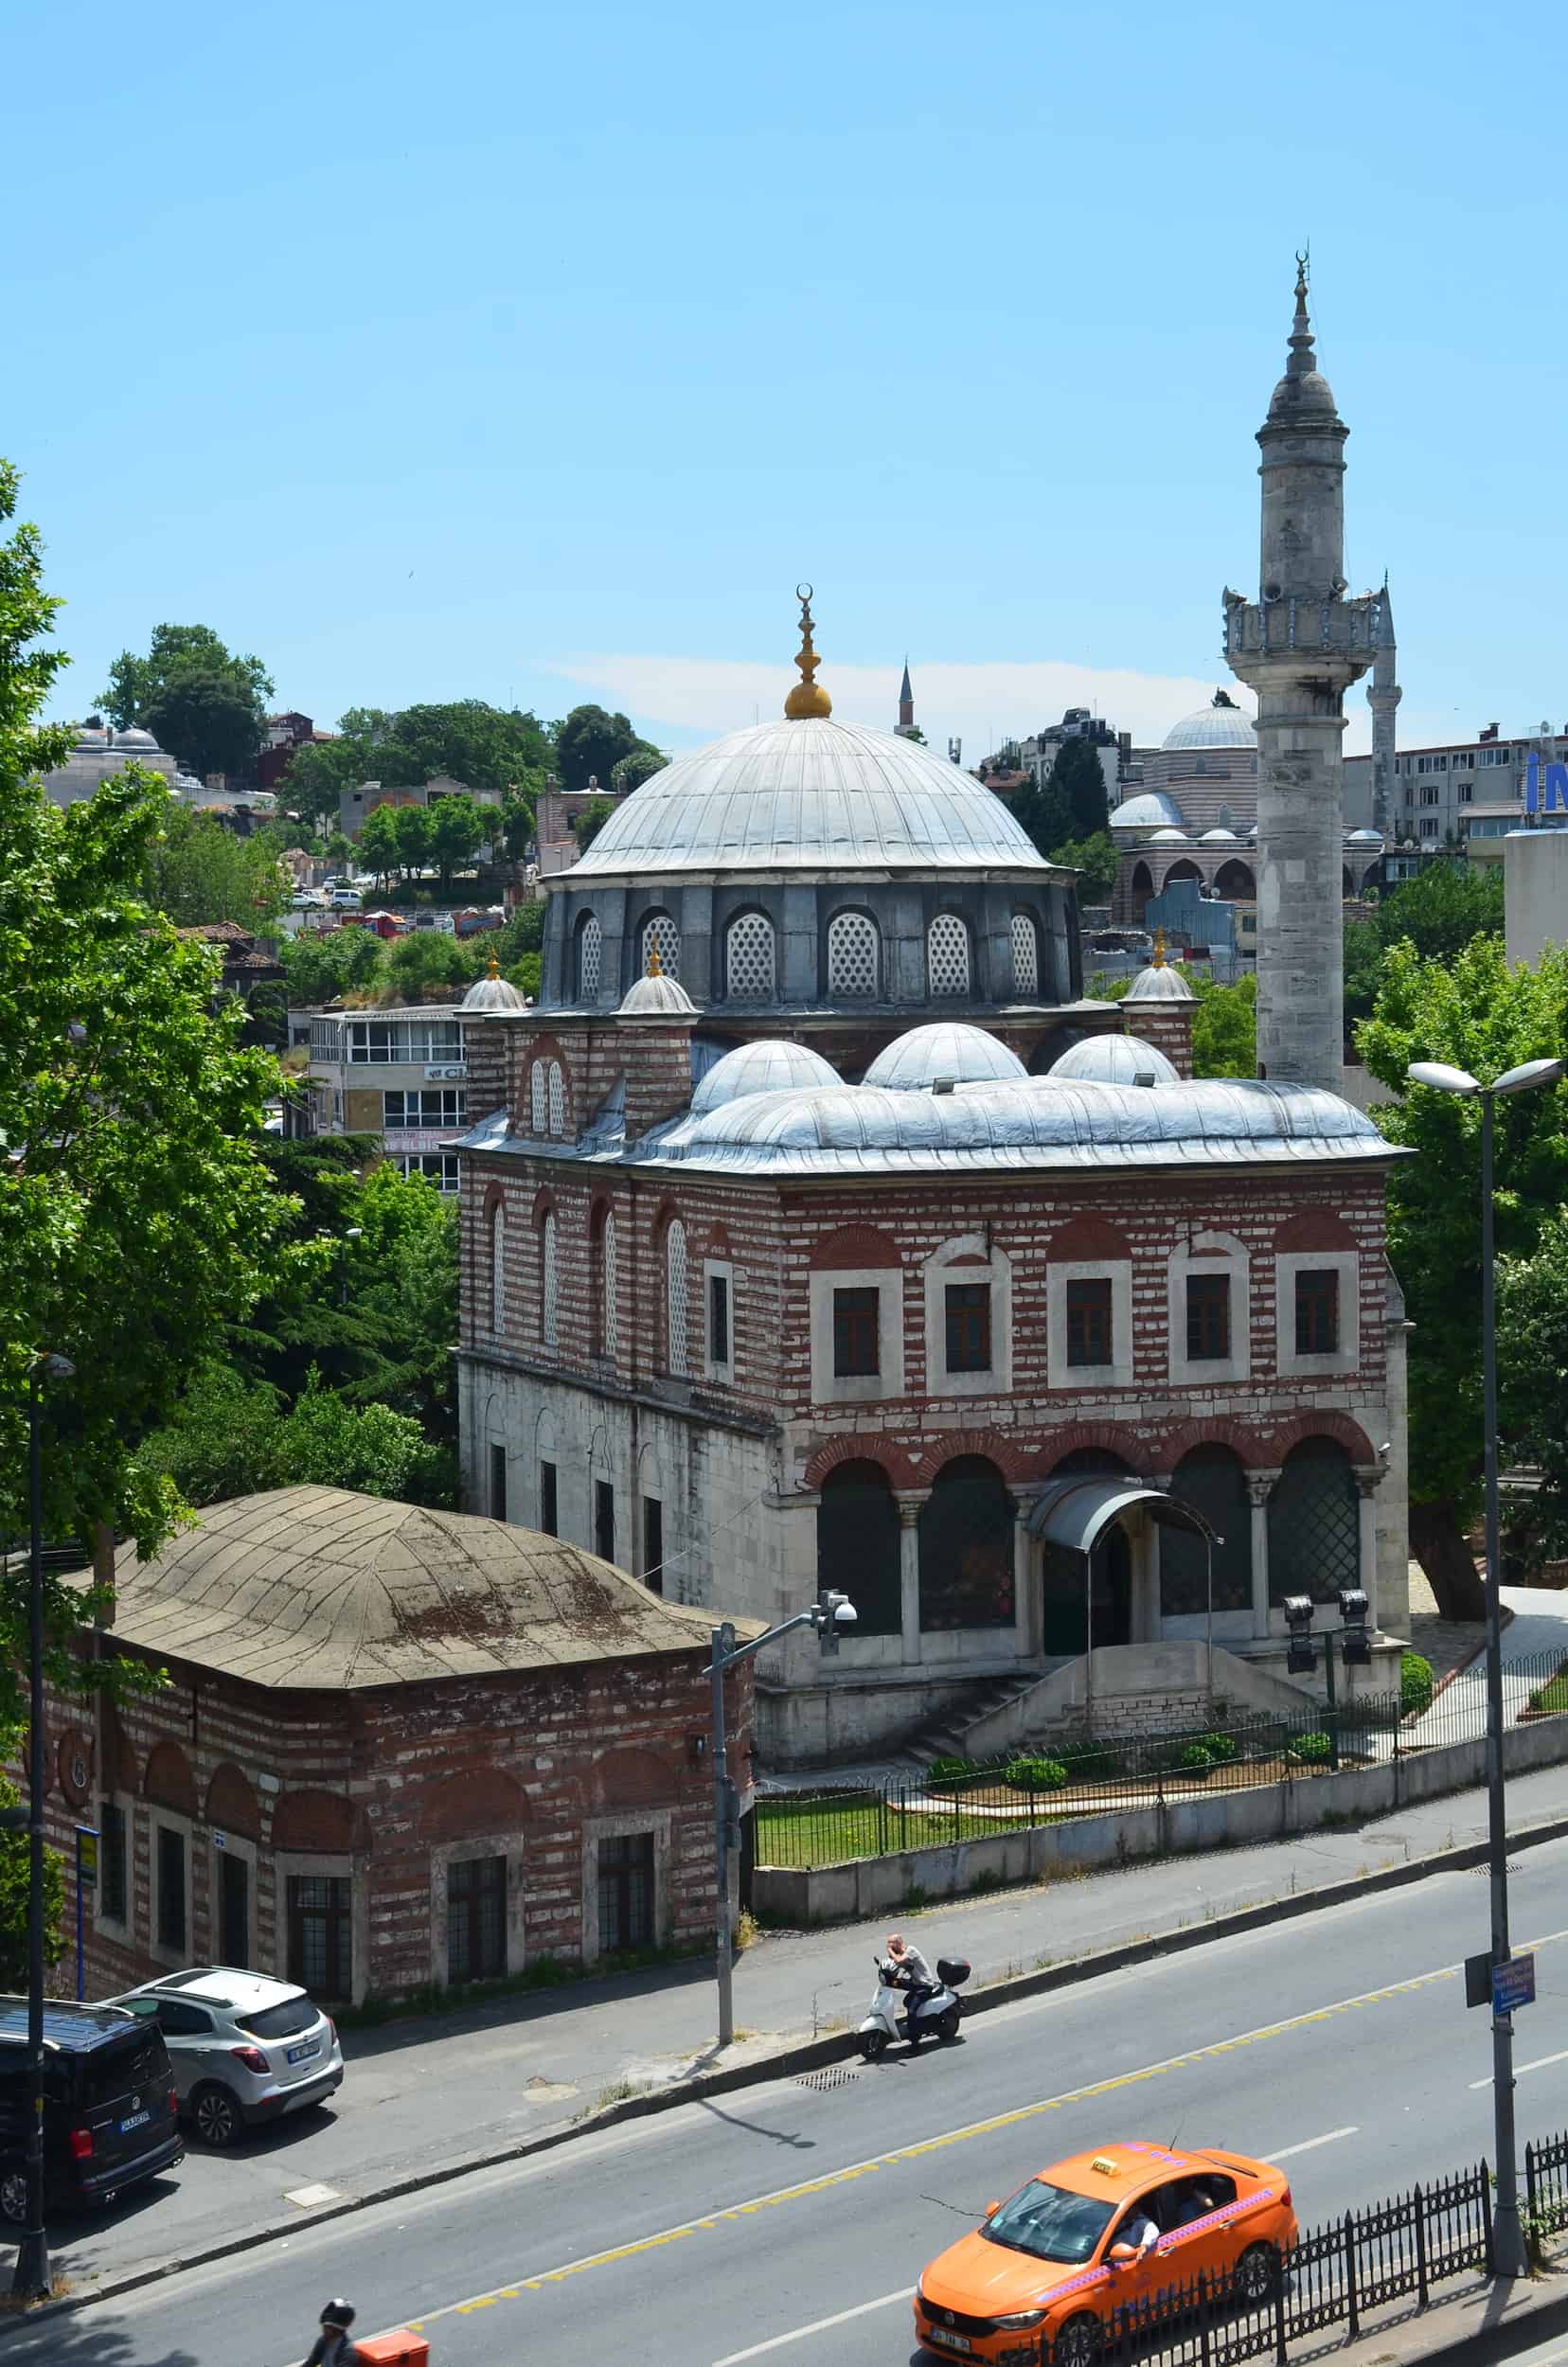 Şebsefa Hatun Mosque in Unkapanı, Istanbul, Turkey